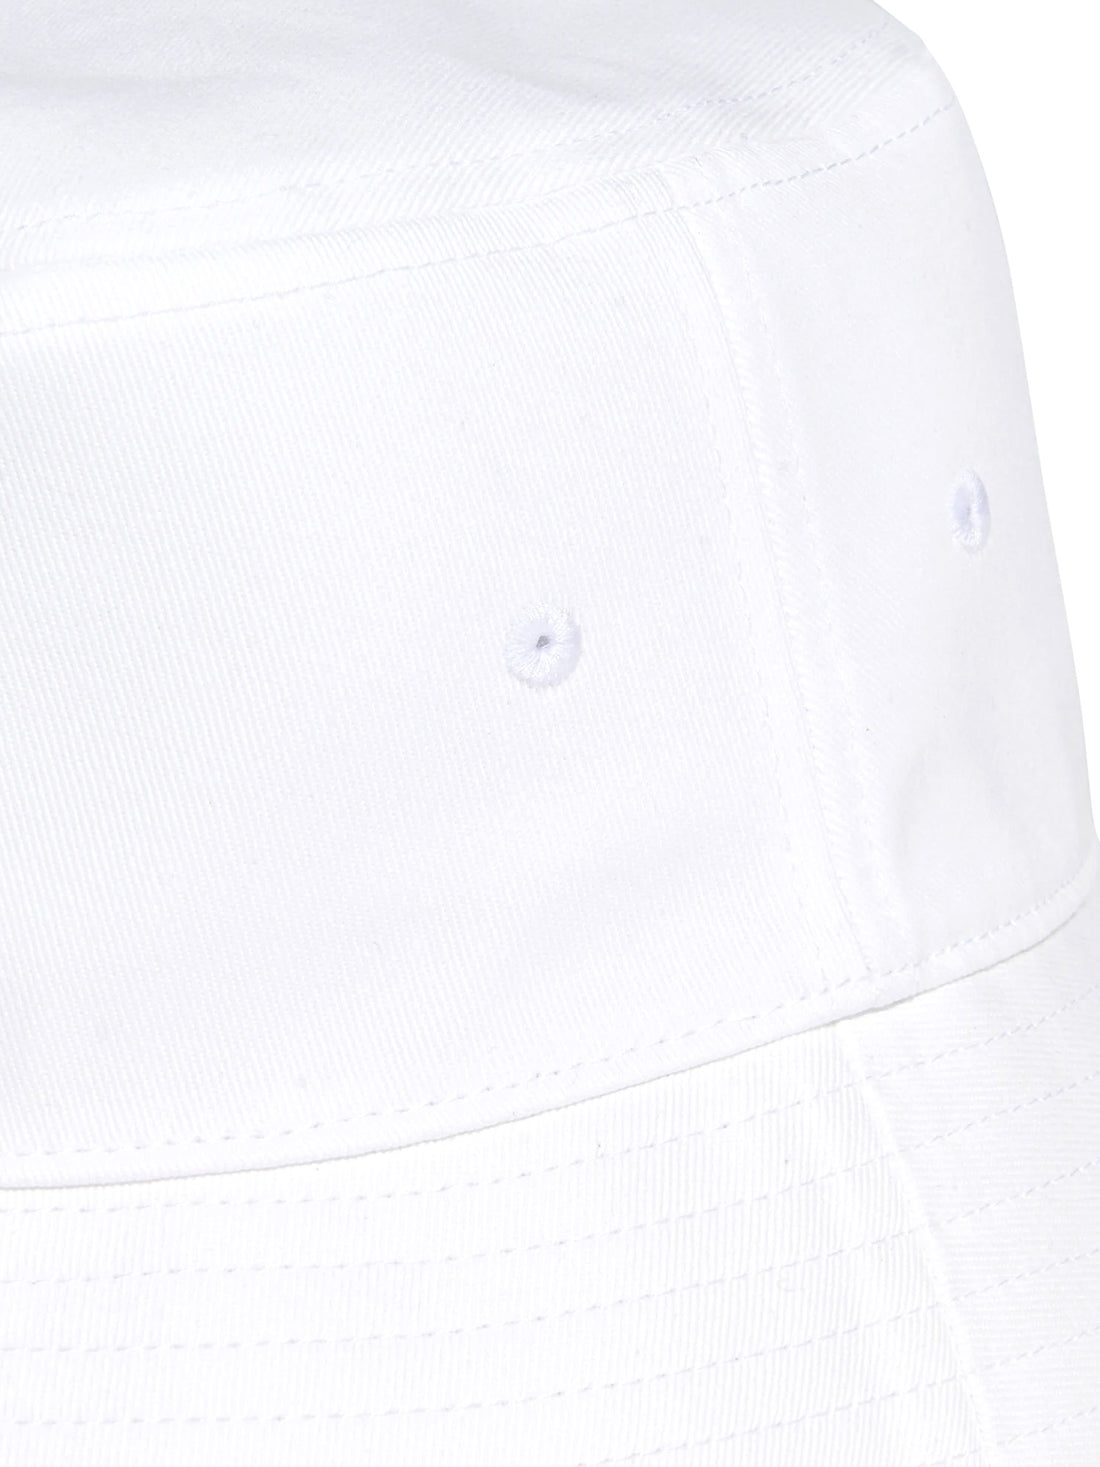 Cappelli Bianco Adidas Originals